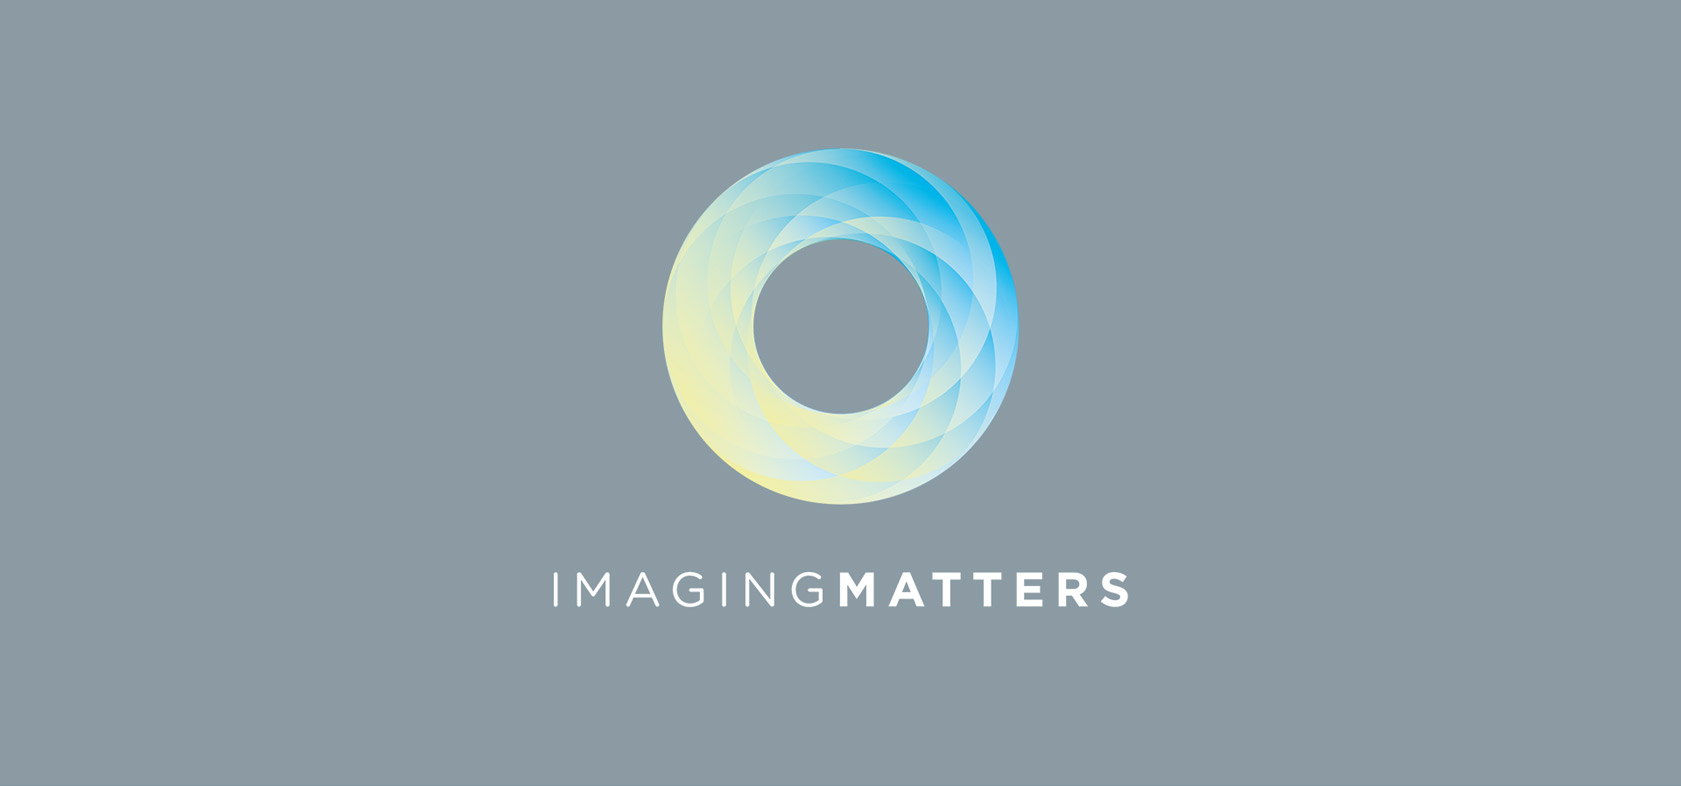 Imaging matter logo